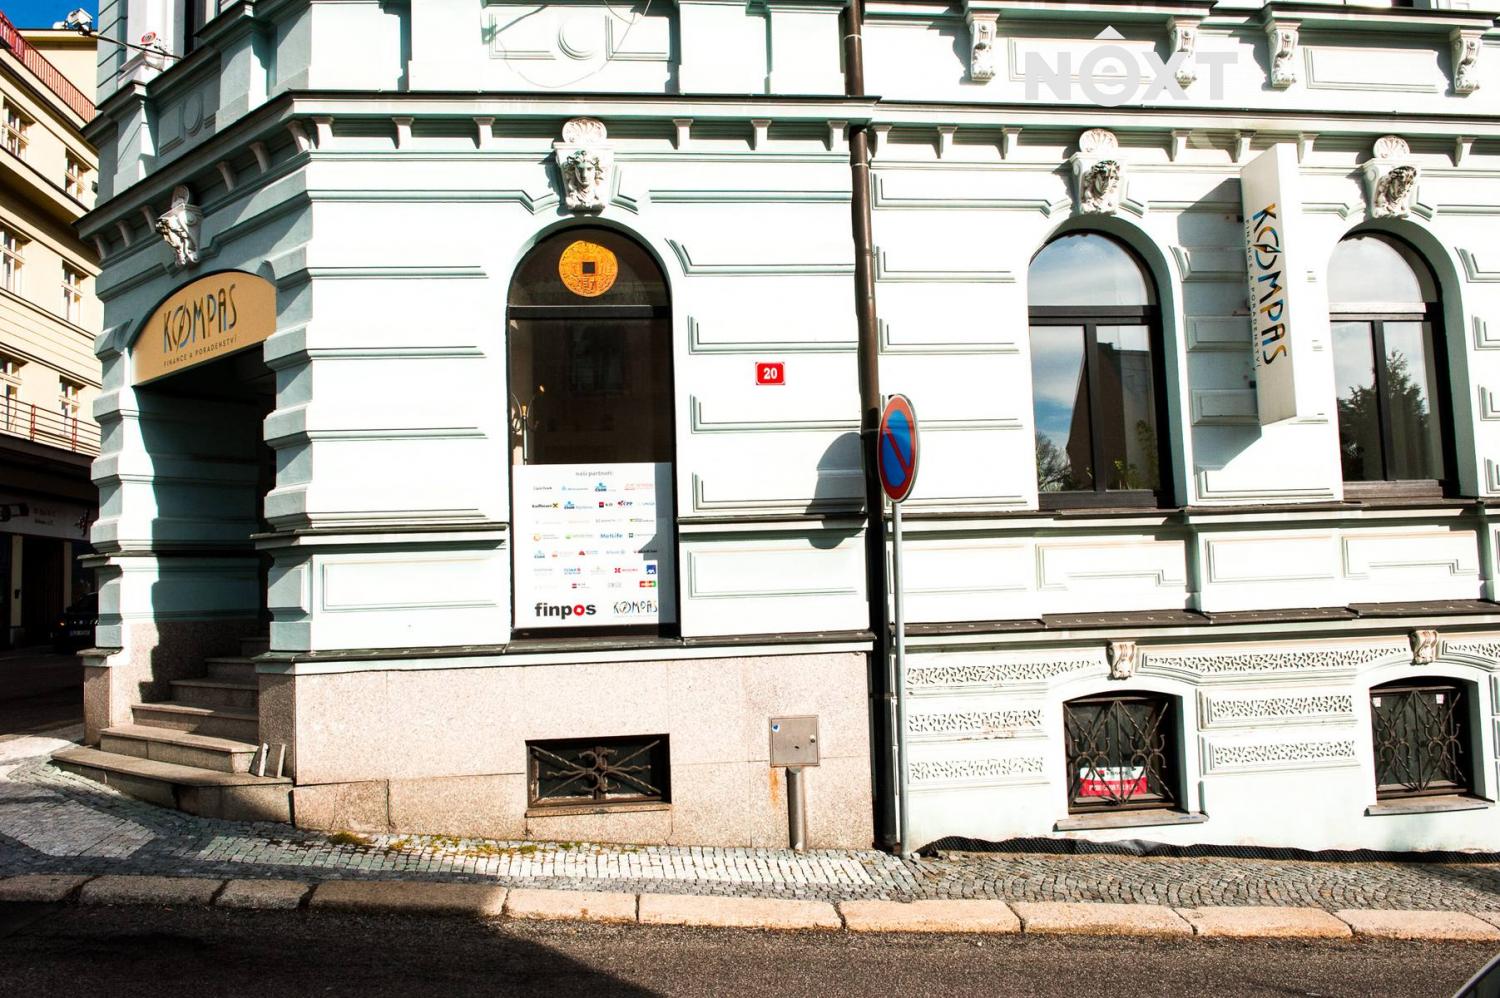 Pronájem komerční Kanceláře, 21㎡|Liberecký kraj, Jablonec nad Nisou, 28. října 982/5, 46601